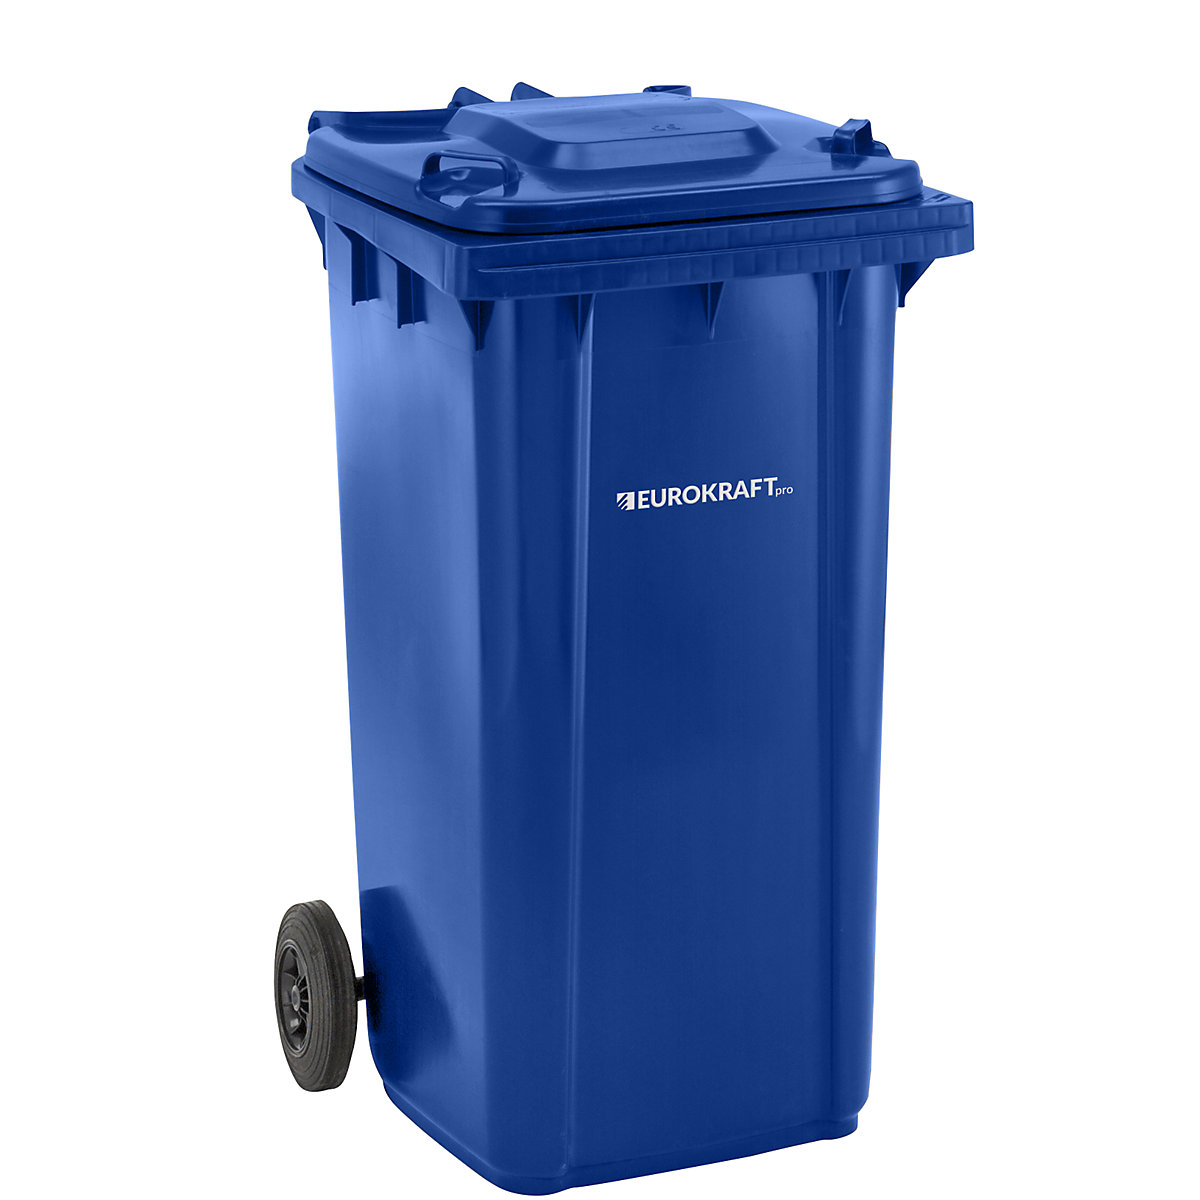 Contenedores de 4 ruedas: la mejor solución para almacenamiento de residuos